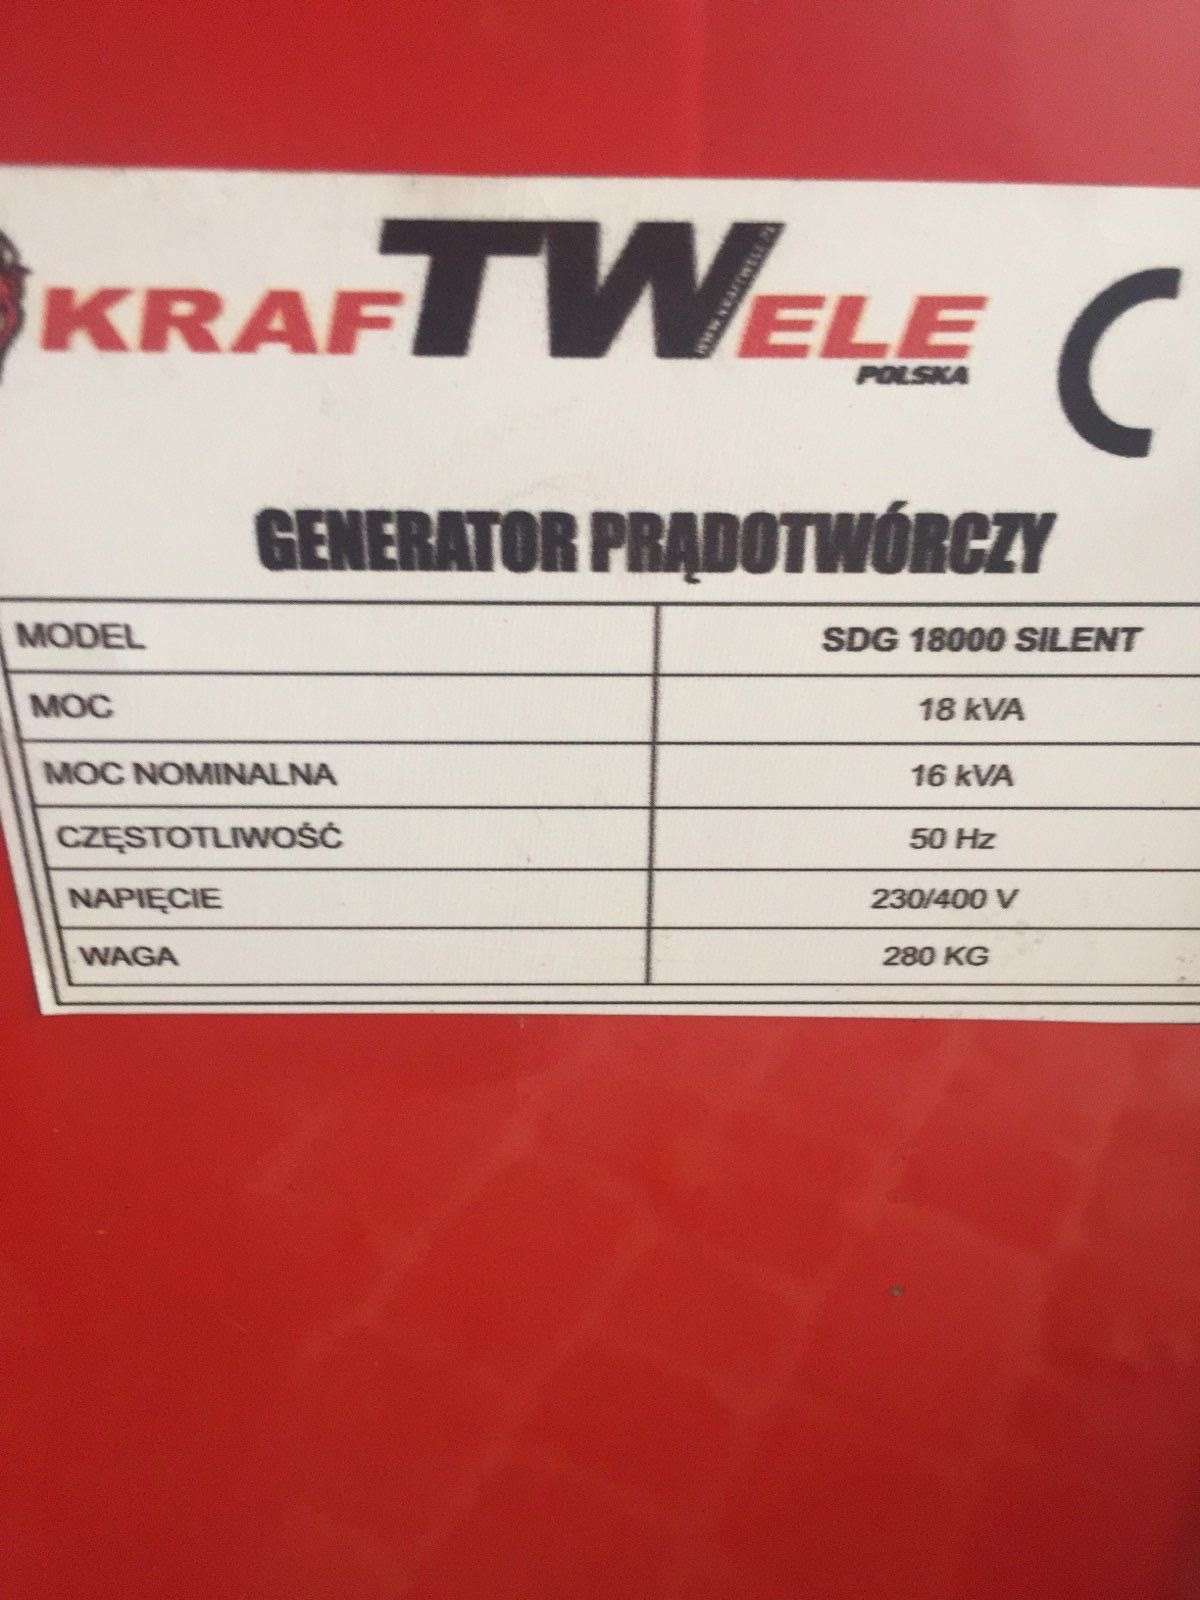 Дизельний генератор KrafTWele SDG 18000 Silent